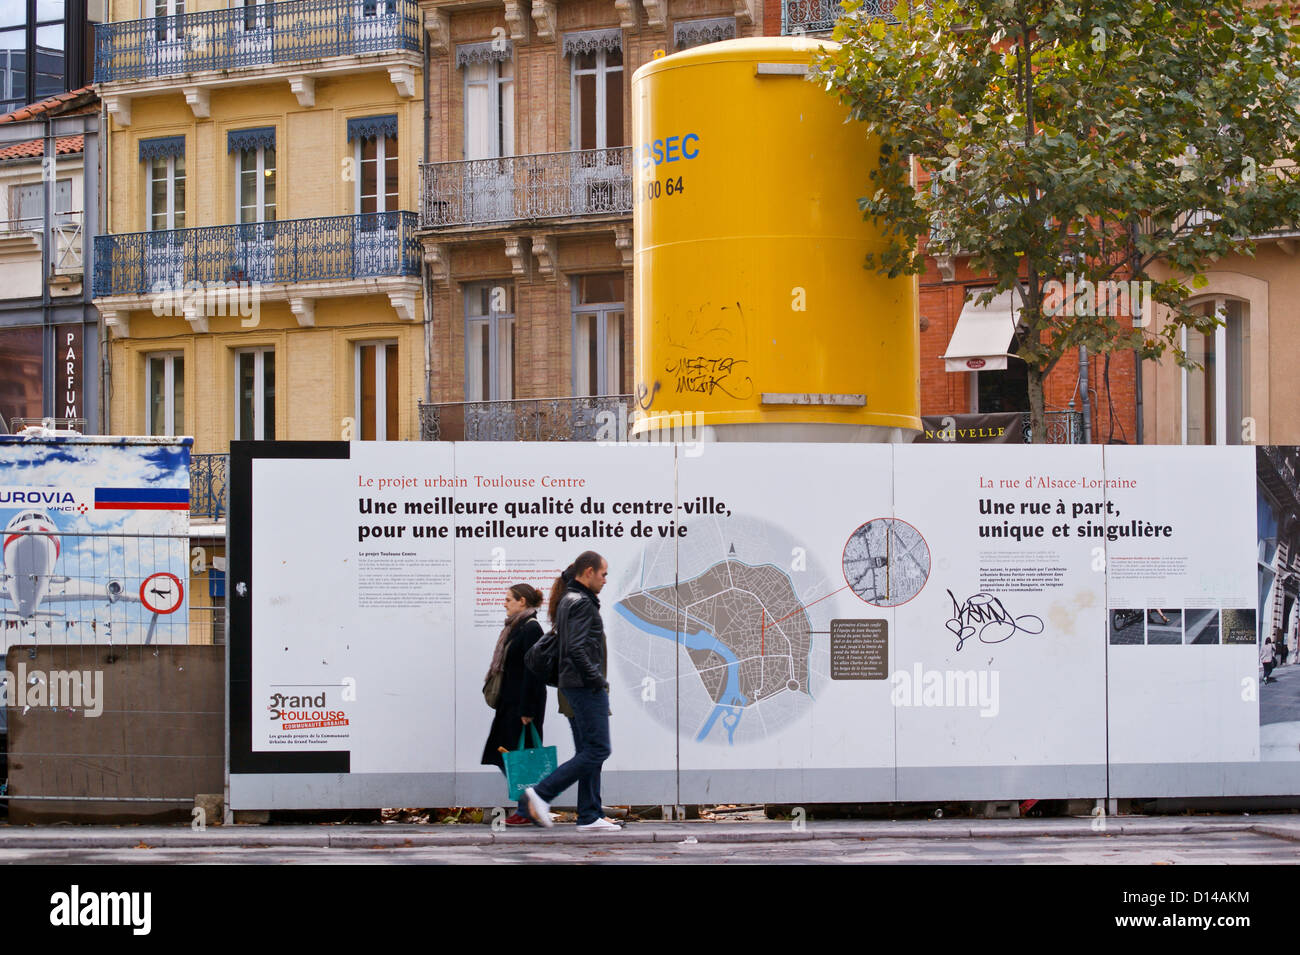 Un uomo e una donna passando per la strada di fronte a una riqualificazione urbana information board, Toulouse, Haute-Garonne, Francia Foto Stock